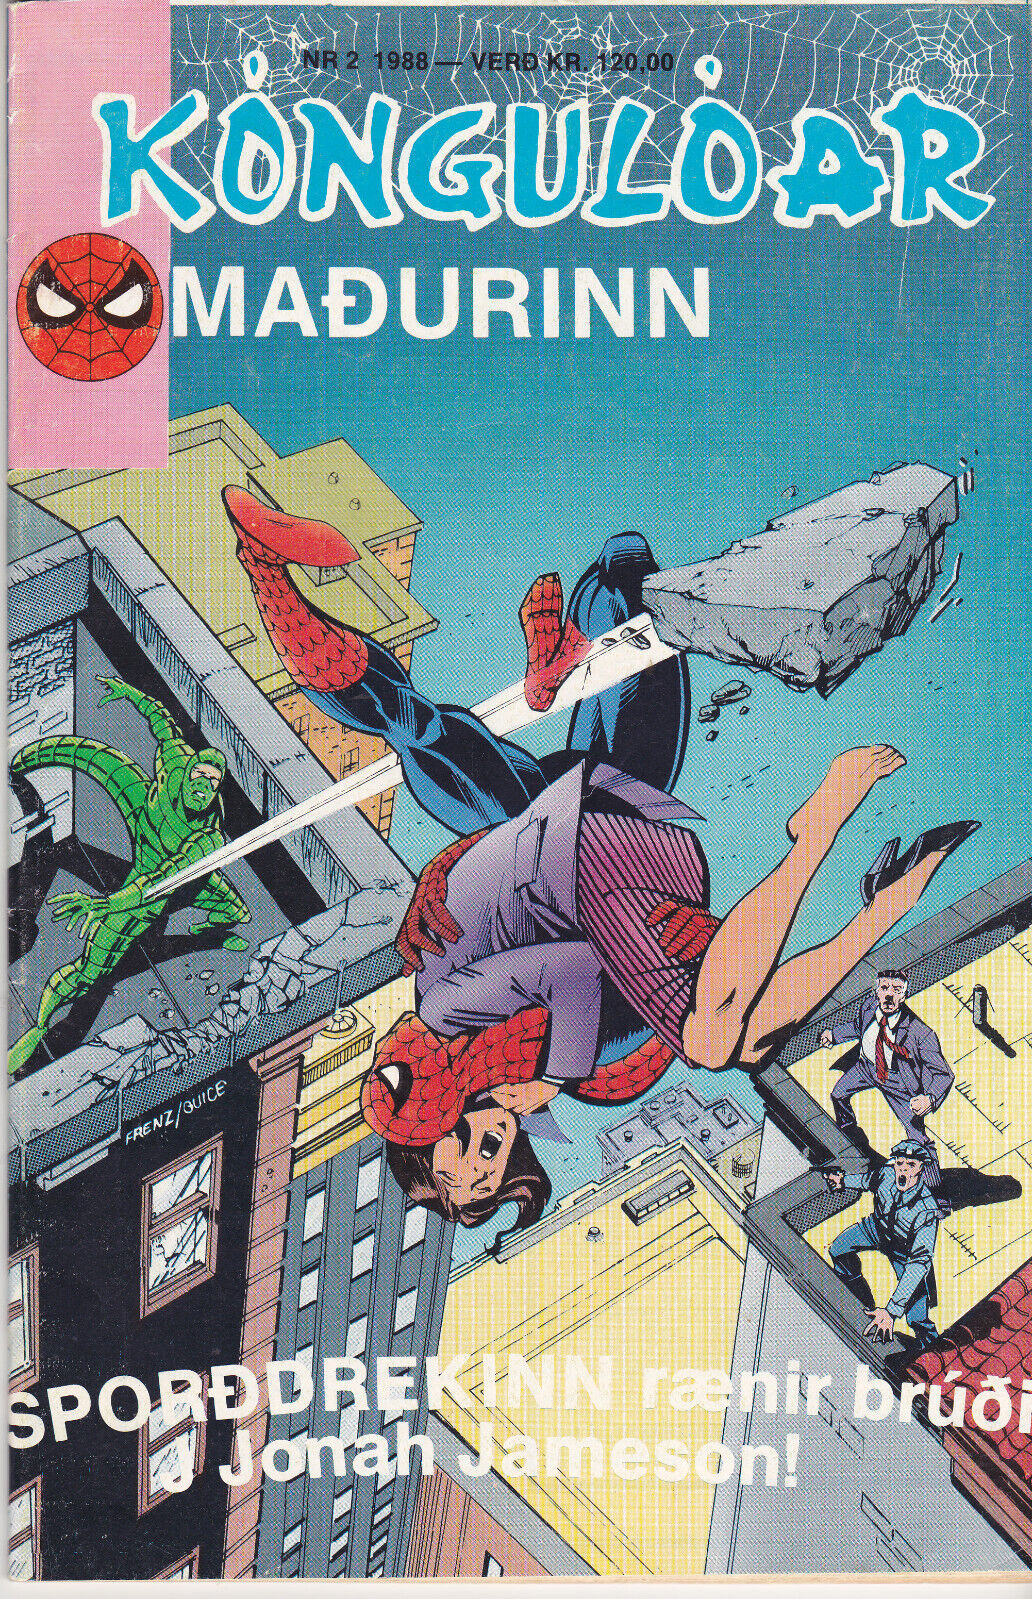 Spider-Man / Kóngulóarmaðurinn  #2  (1988) in Icelandic !